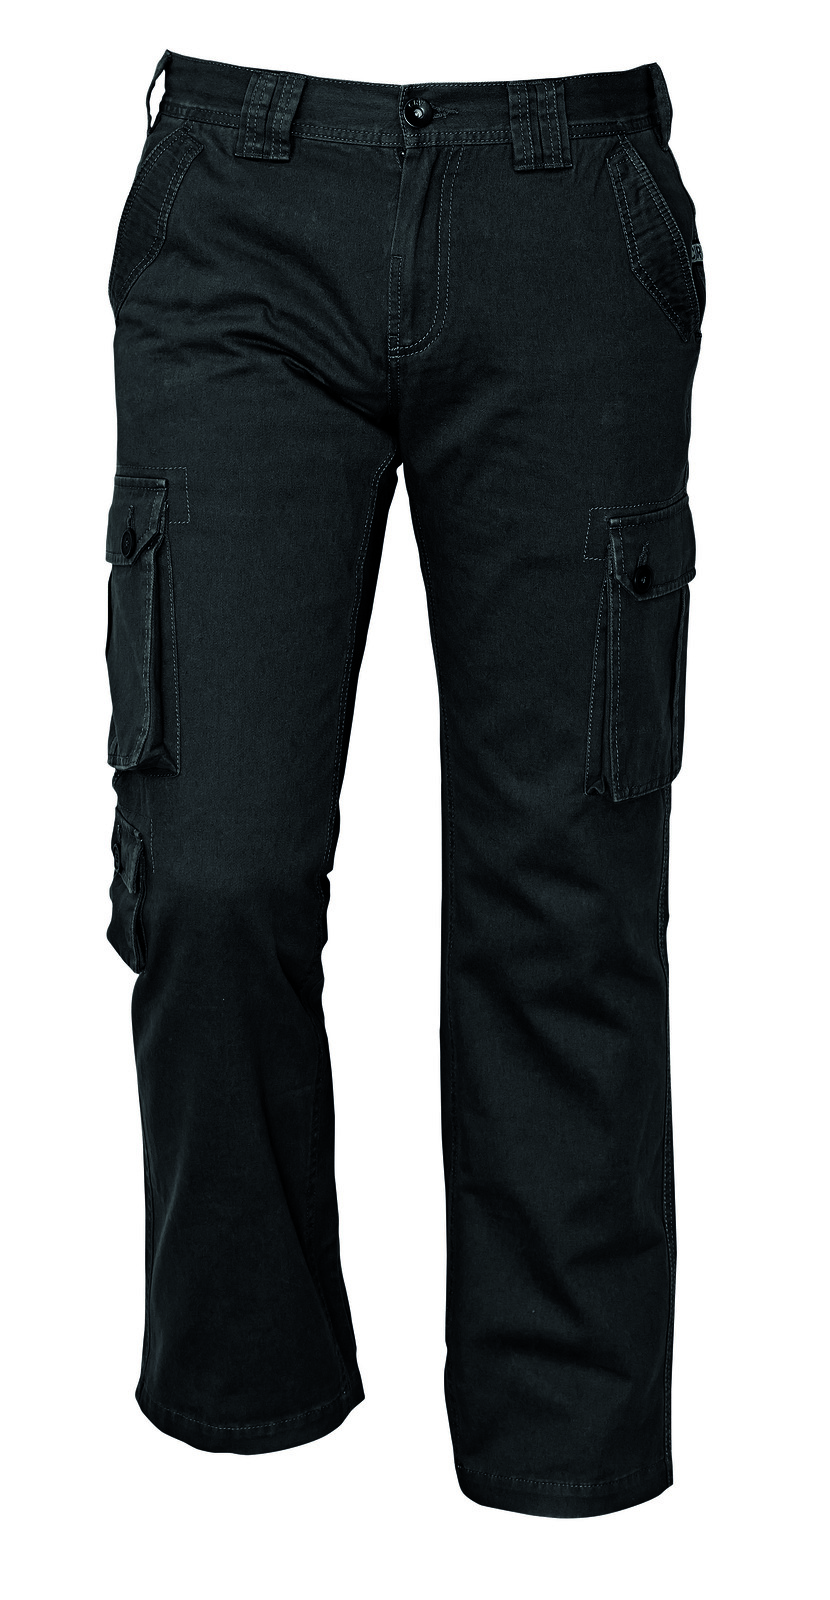 Pánske nohavice Chena kapsáče - veľkosť: 3XL, farba: čierna